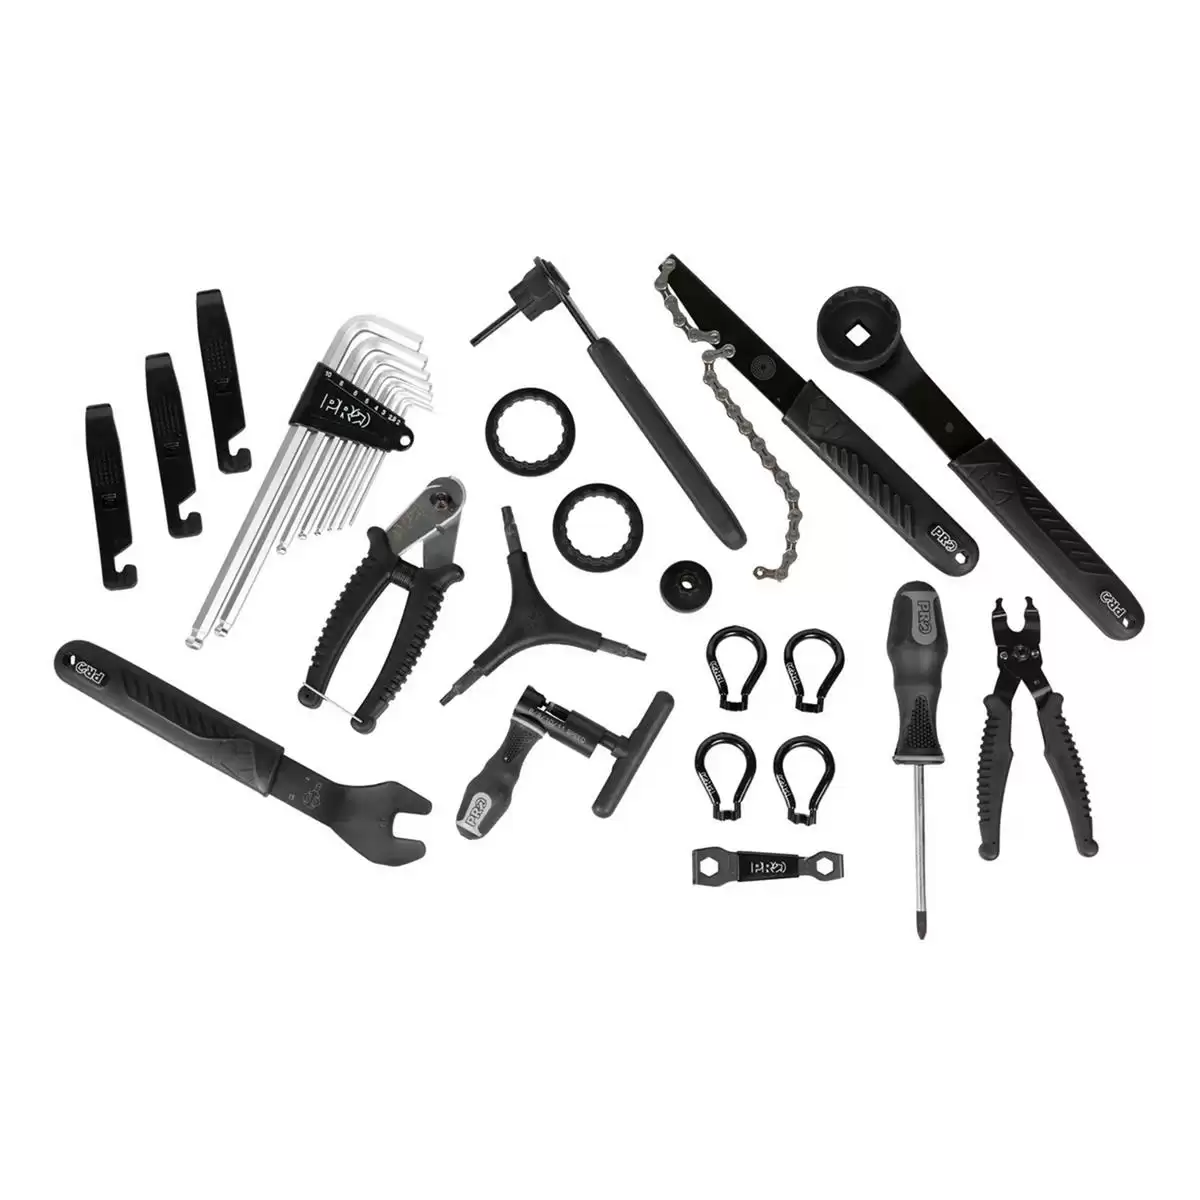 Advanced Toolbox 25 Tools #2